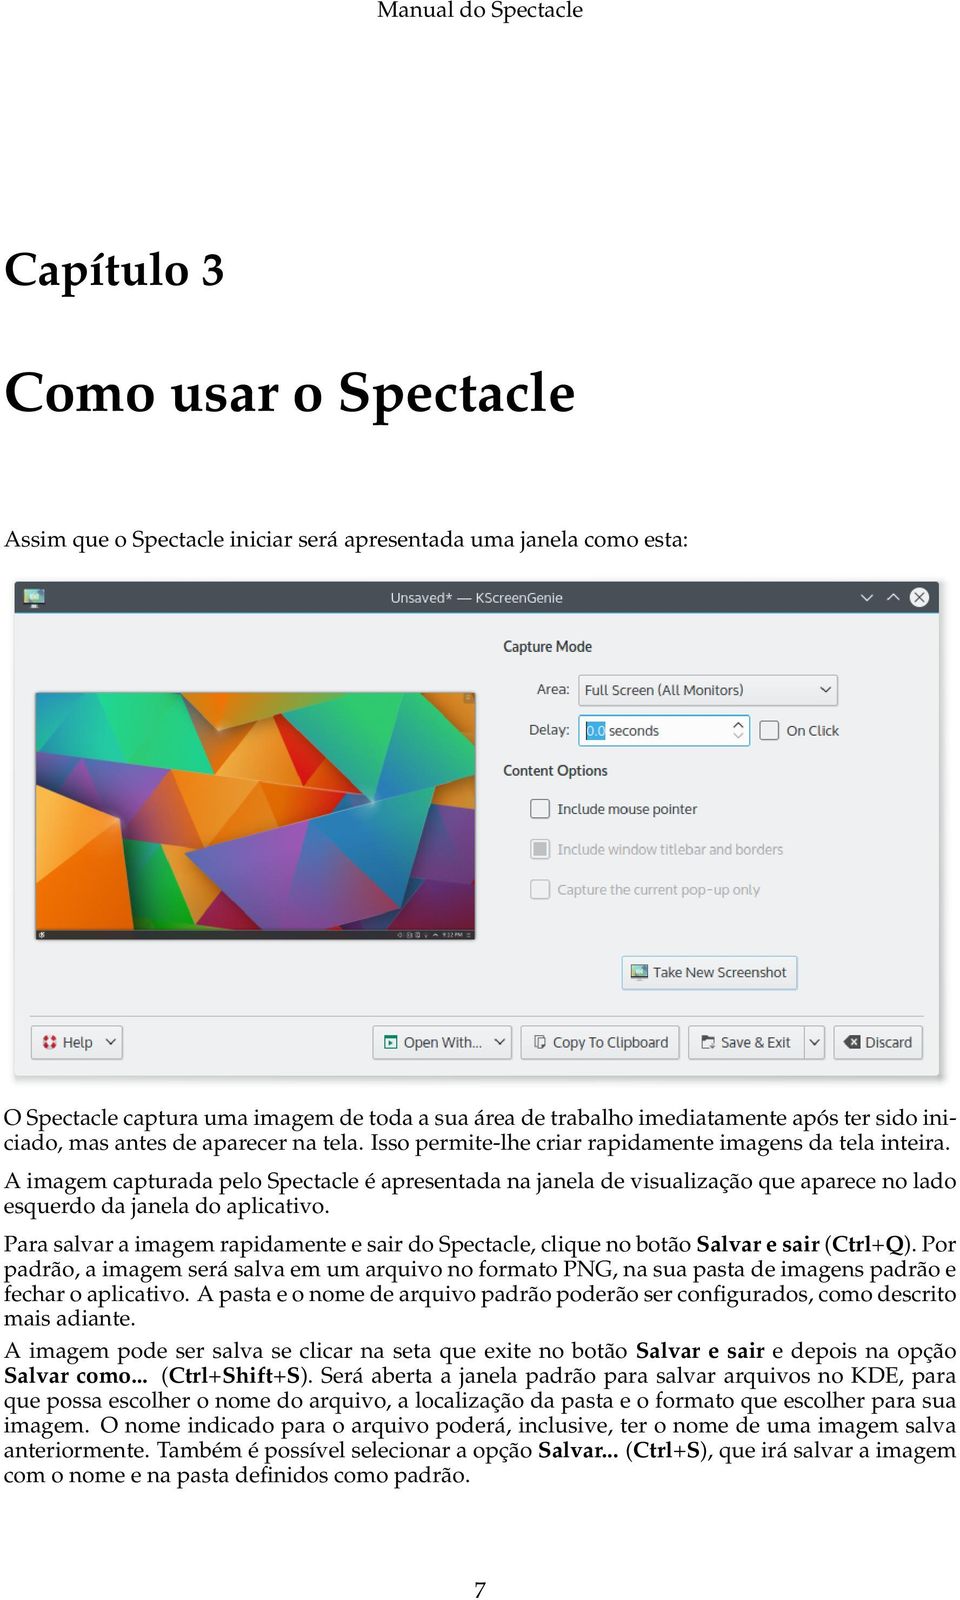 A imagem capturada pelo Spectacle é apresentada na janela de visualização que aparece no lado esquerdo da janela do aplicativo.